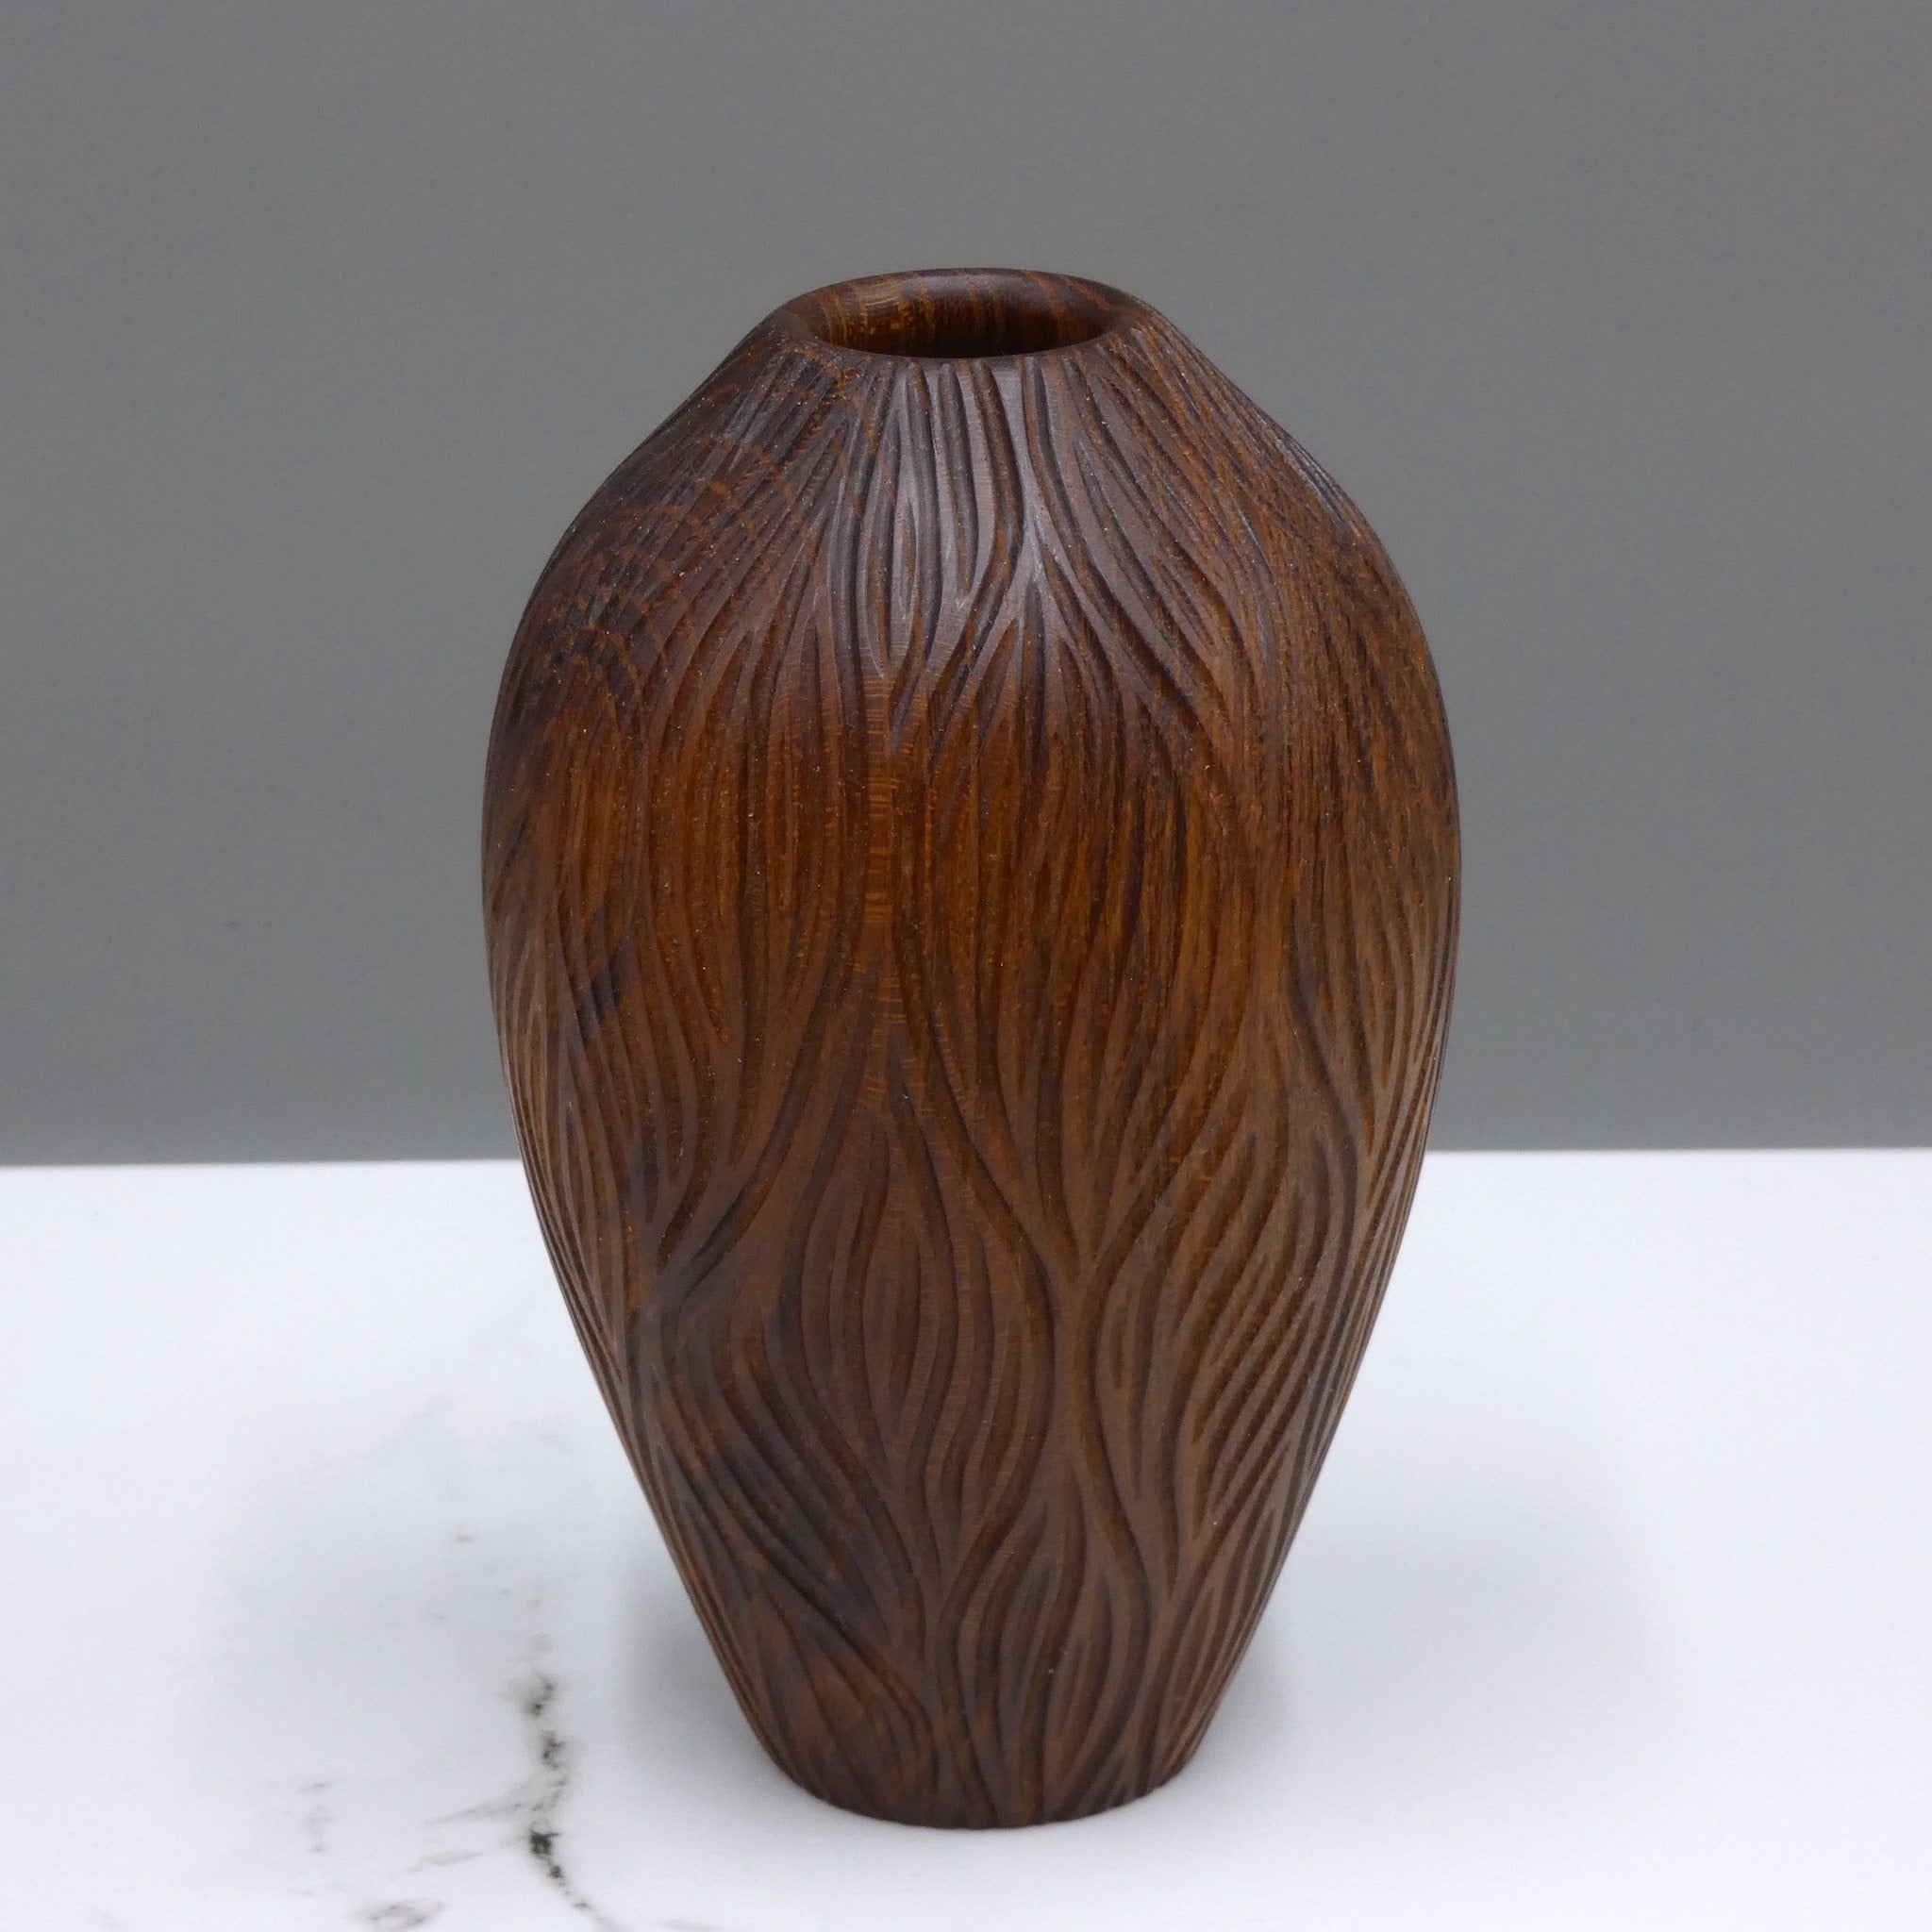 Carved laburnum vase by woodturner Howard Moody